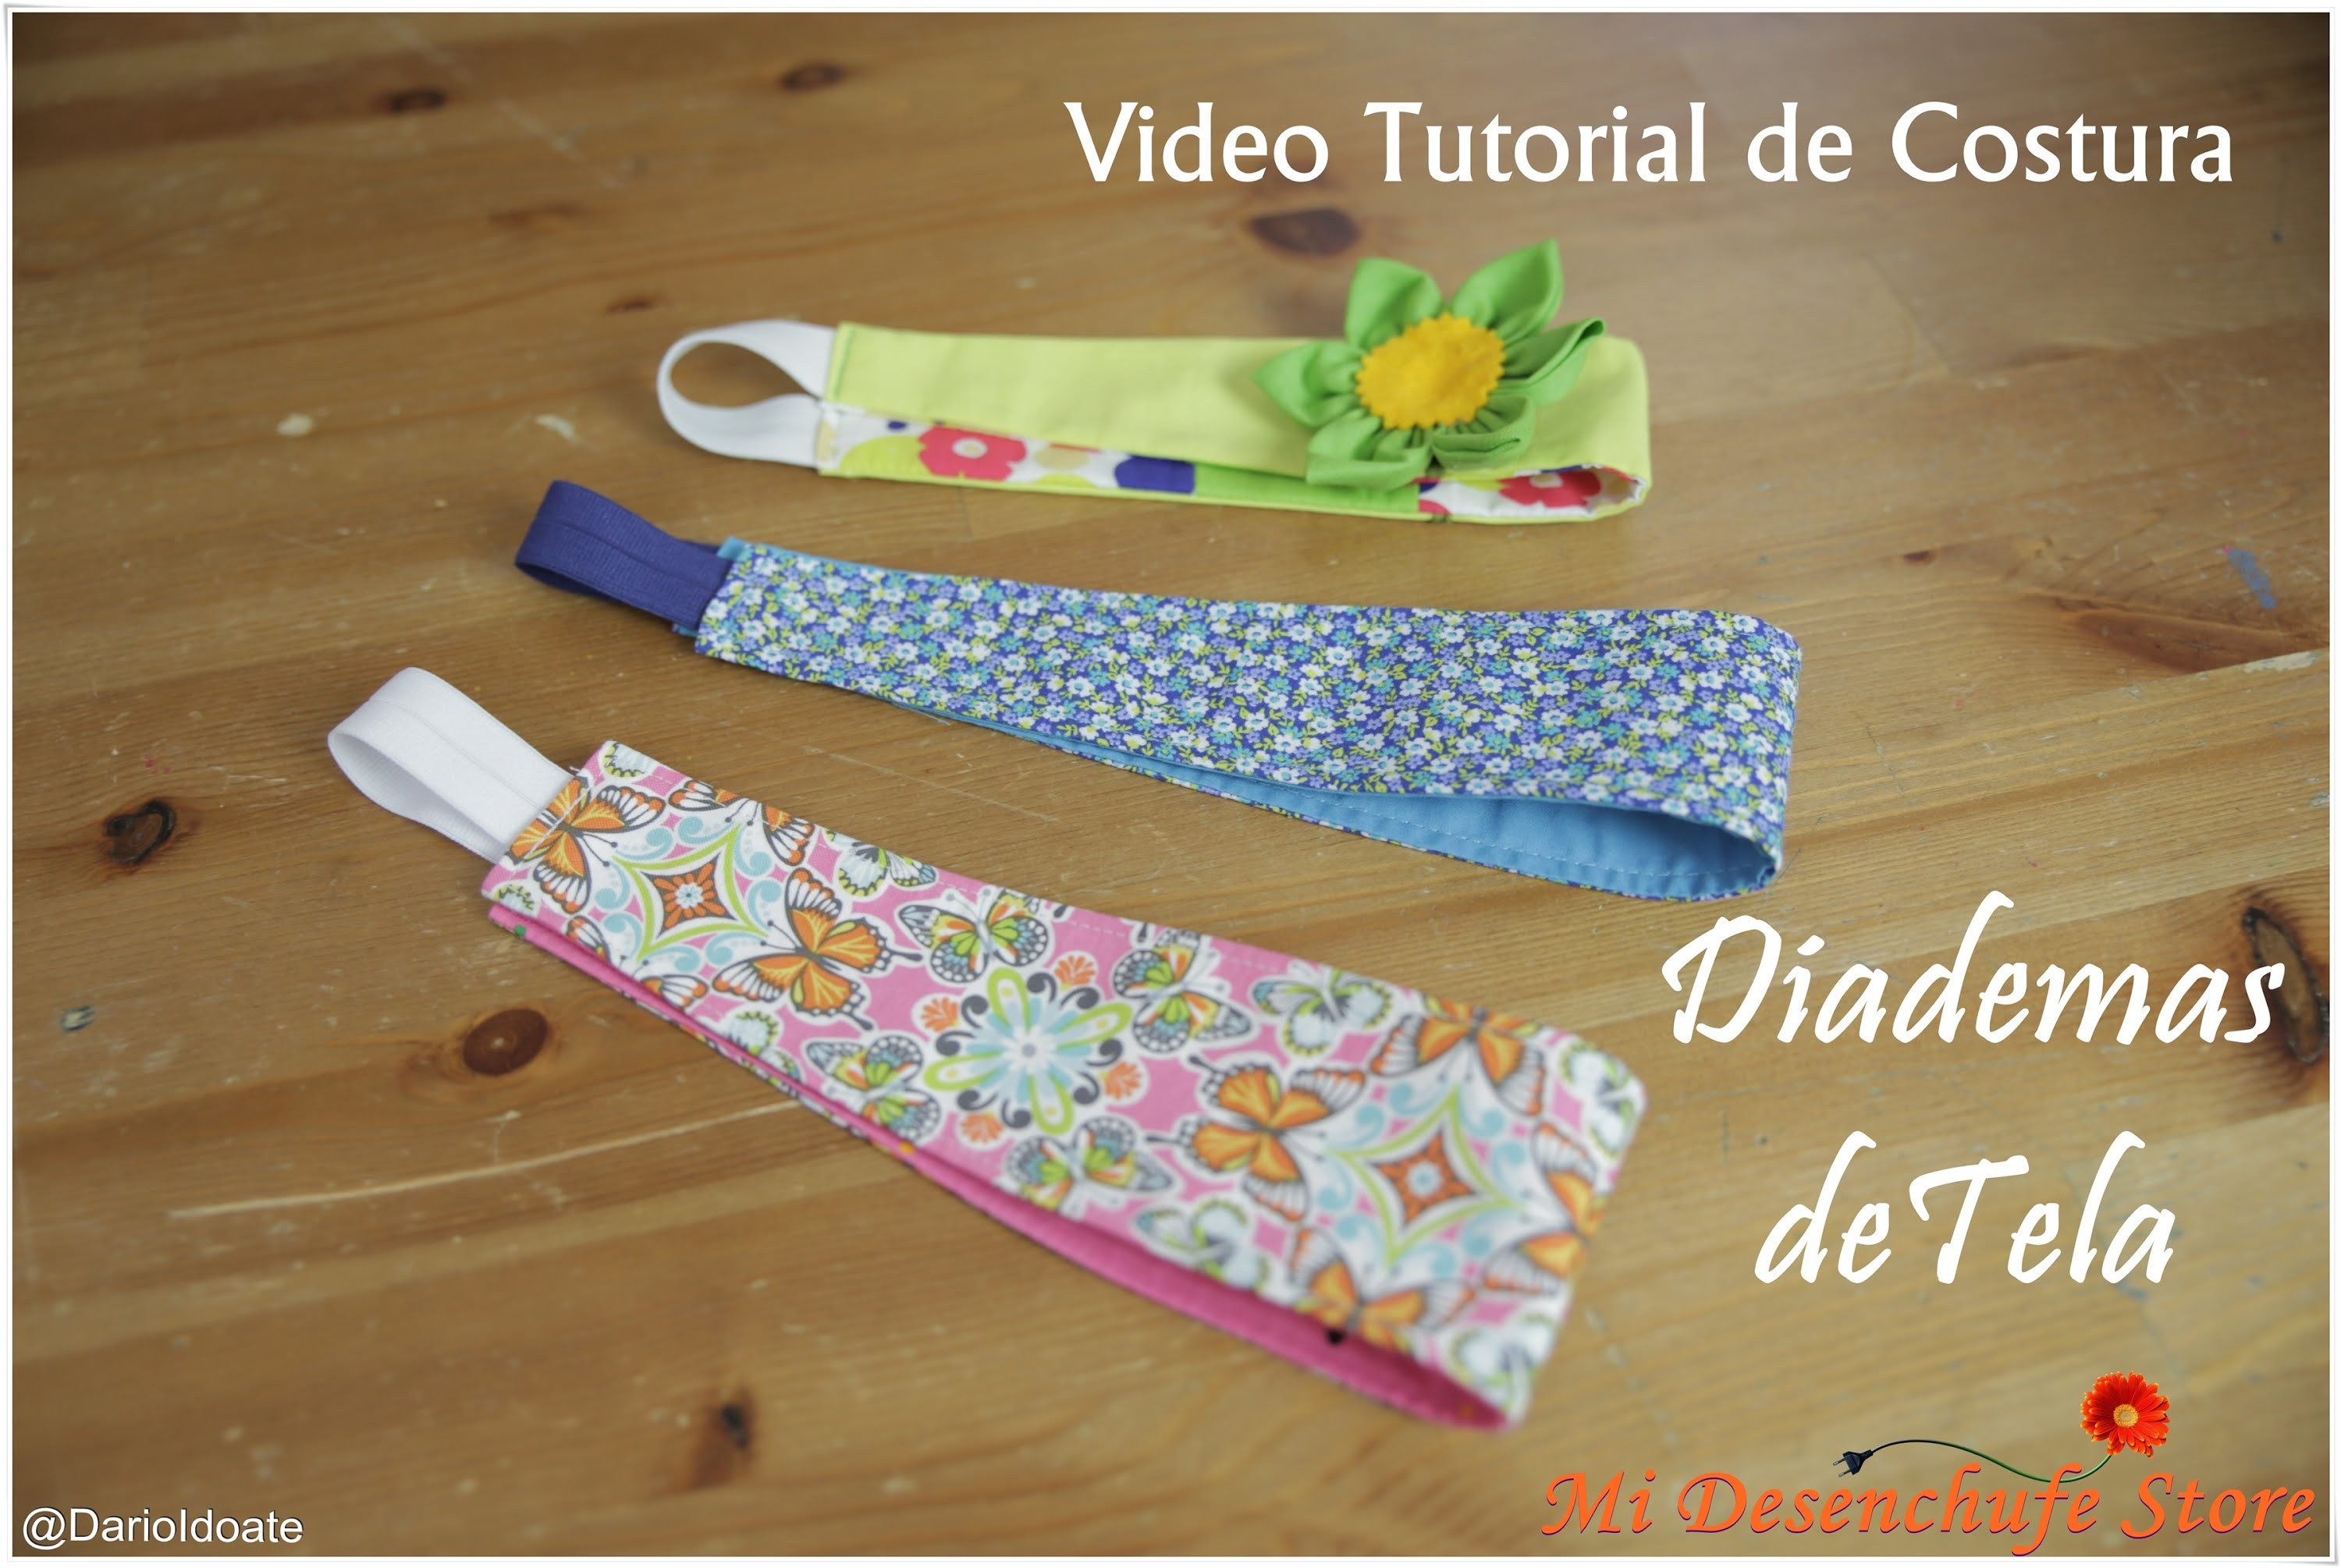 Tutorial #5 - Como hacer Diademas de Tela - How to make a headband fabric